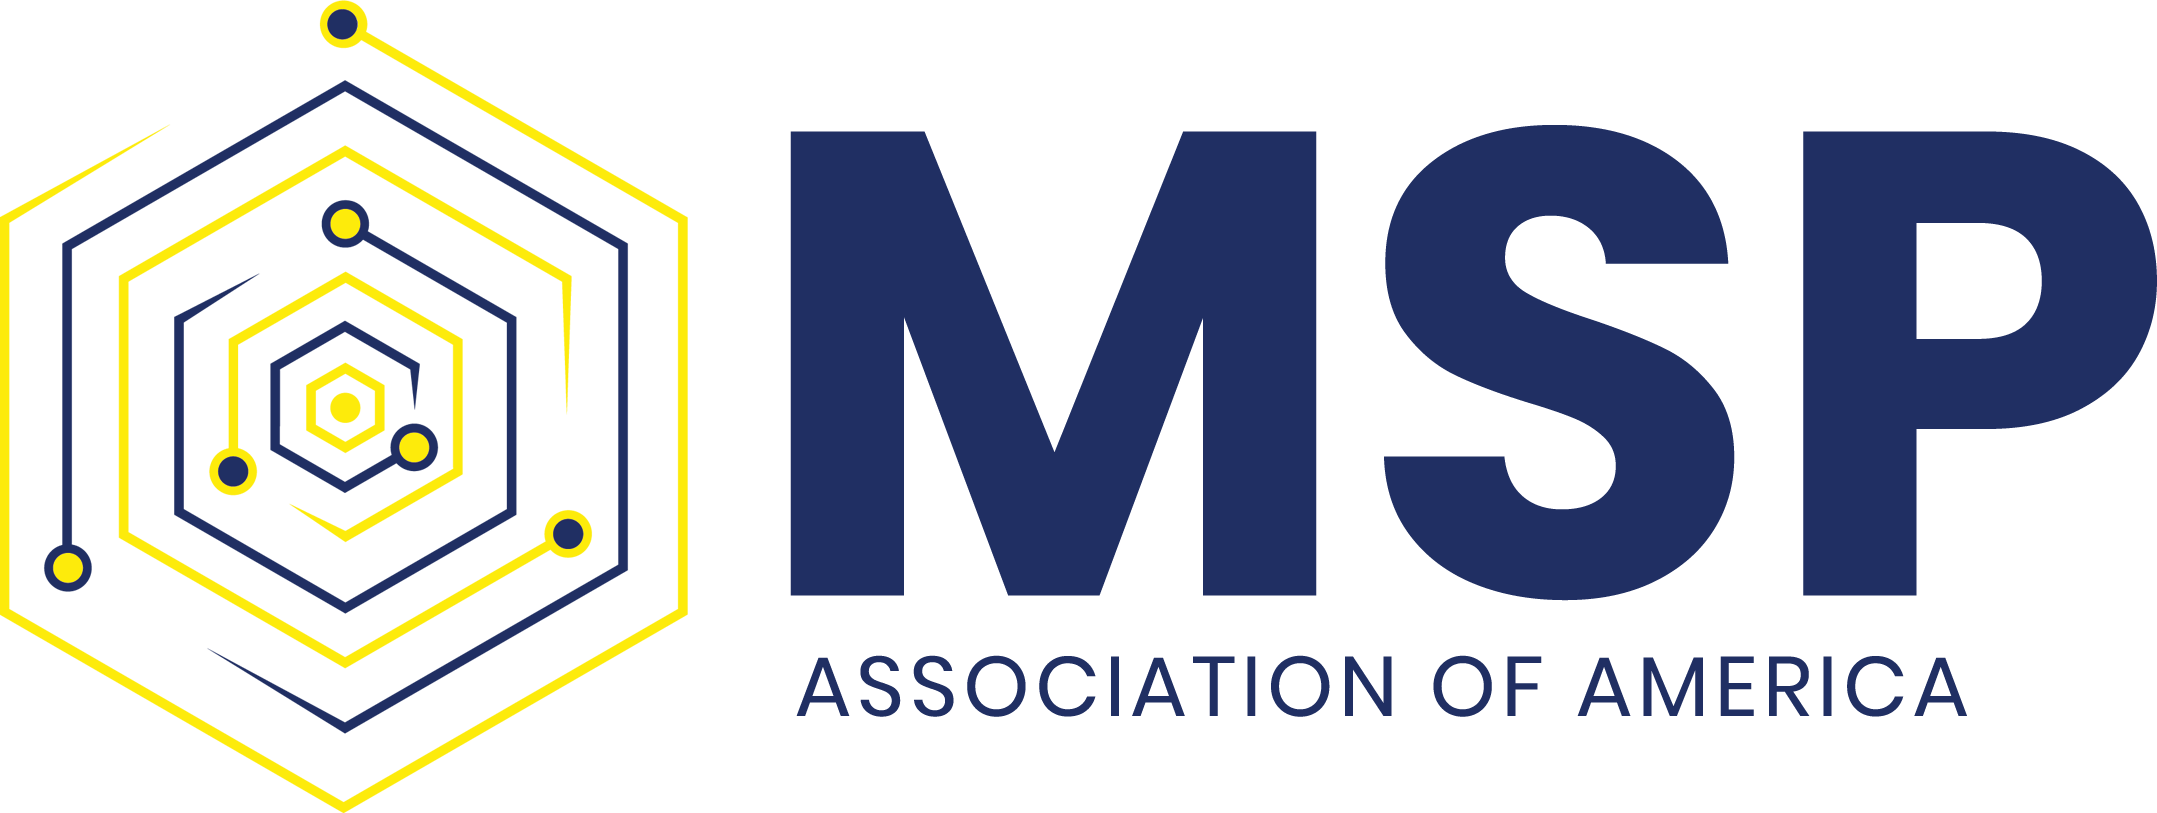 Cloud Data Center World | MSP Association of America